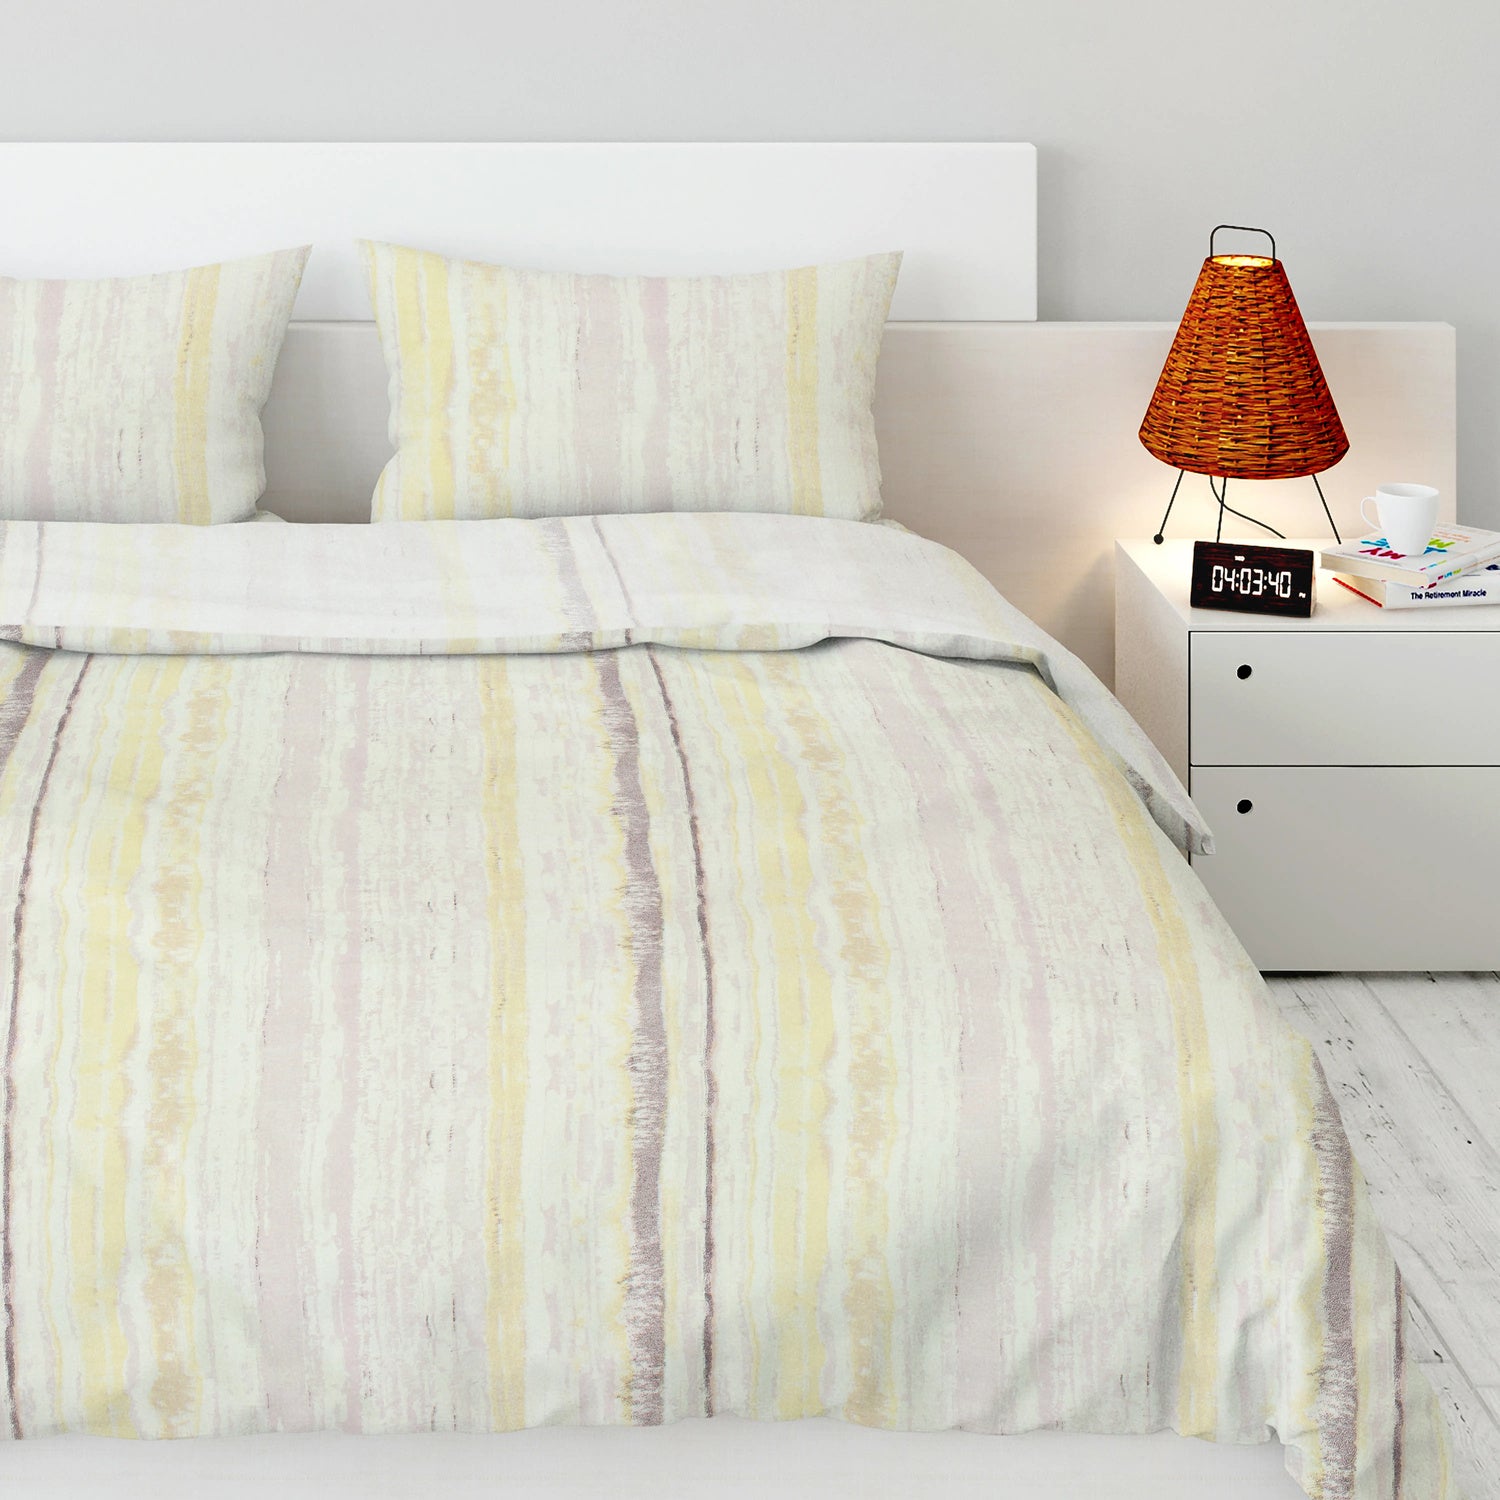 KYOMI Tufted Stripe Printed Bed Sheet